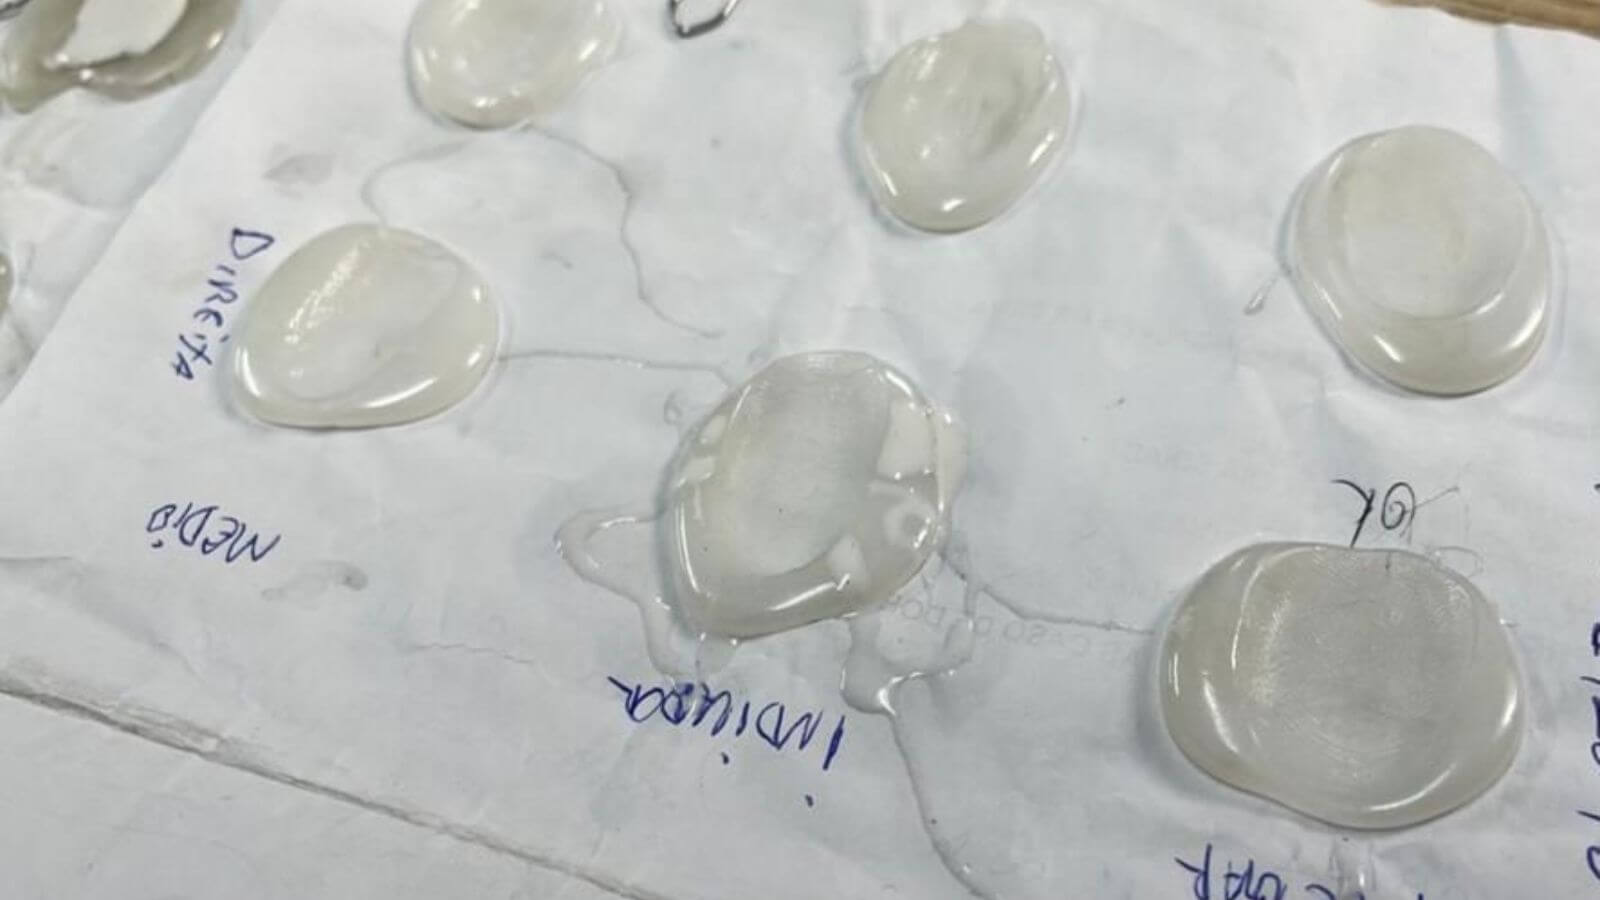 Detran-SP apreende 116 dedos de silicone em autoescolas